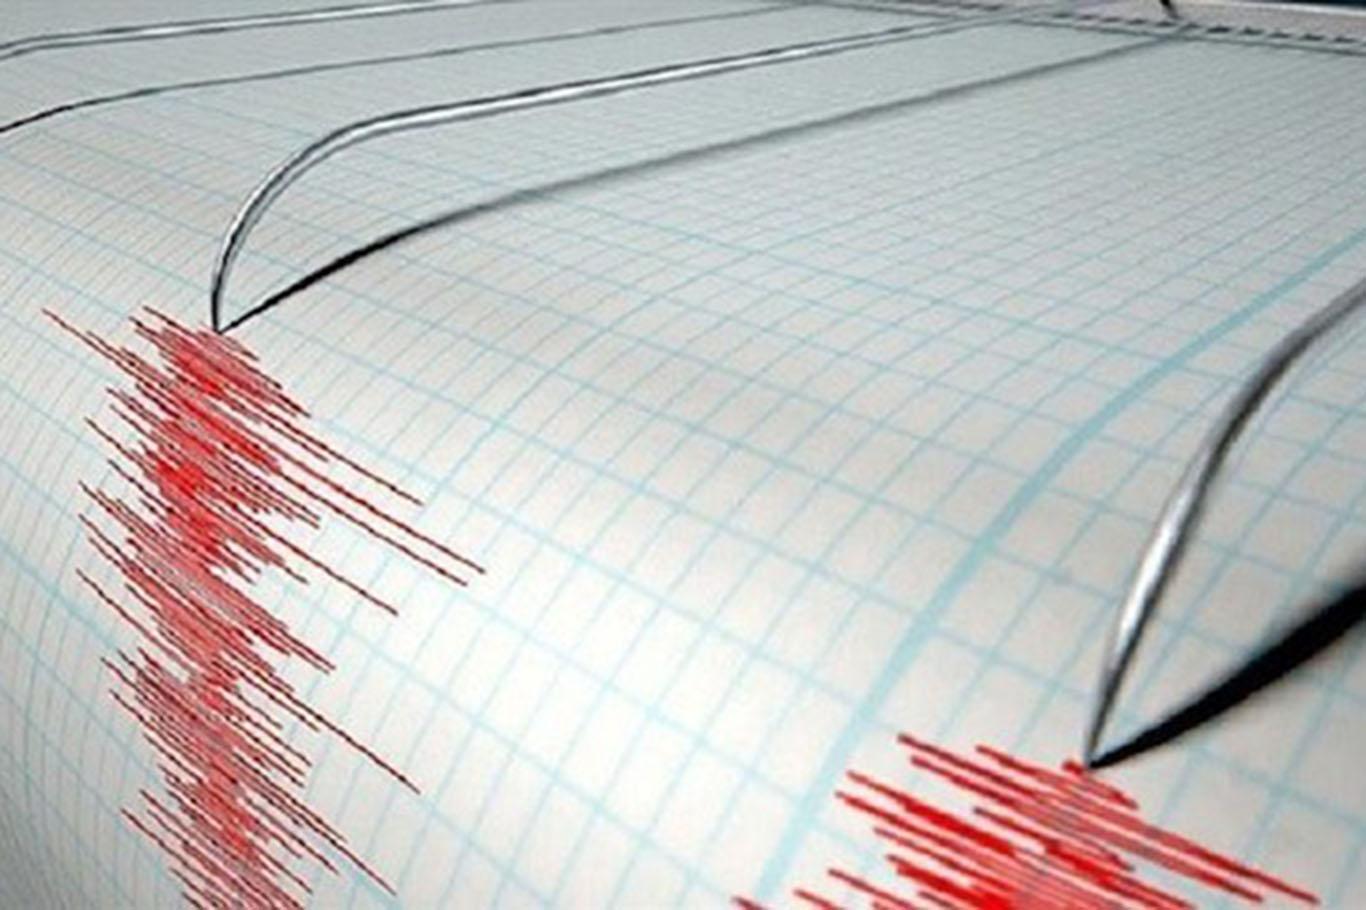 Endonezya'da deprem: Tsunami uyarısı yapıldı